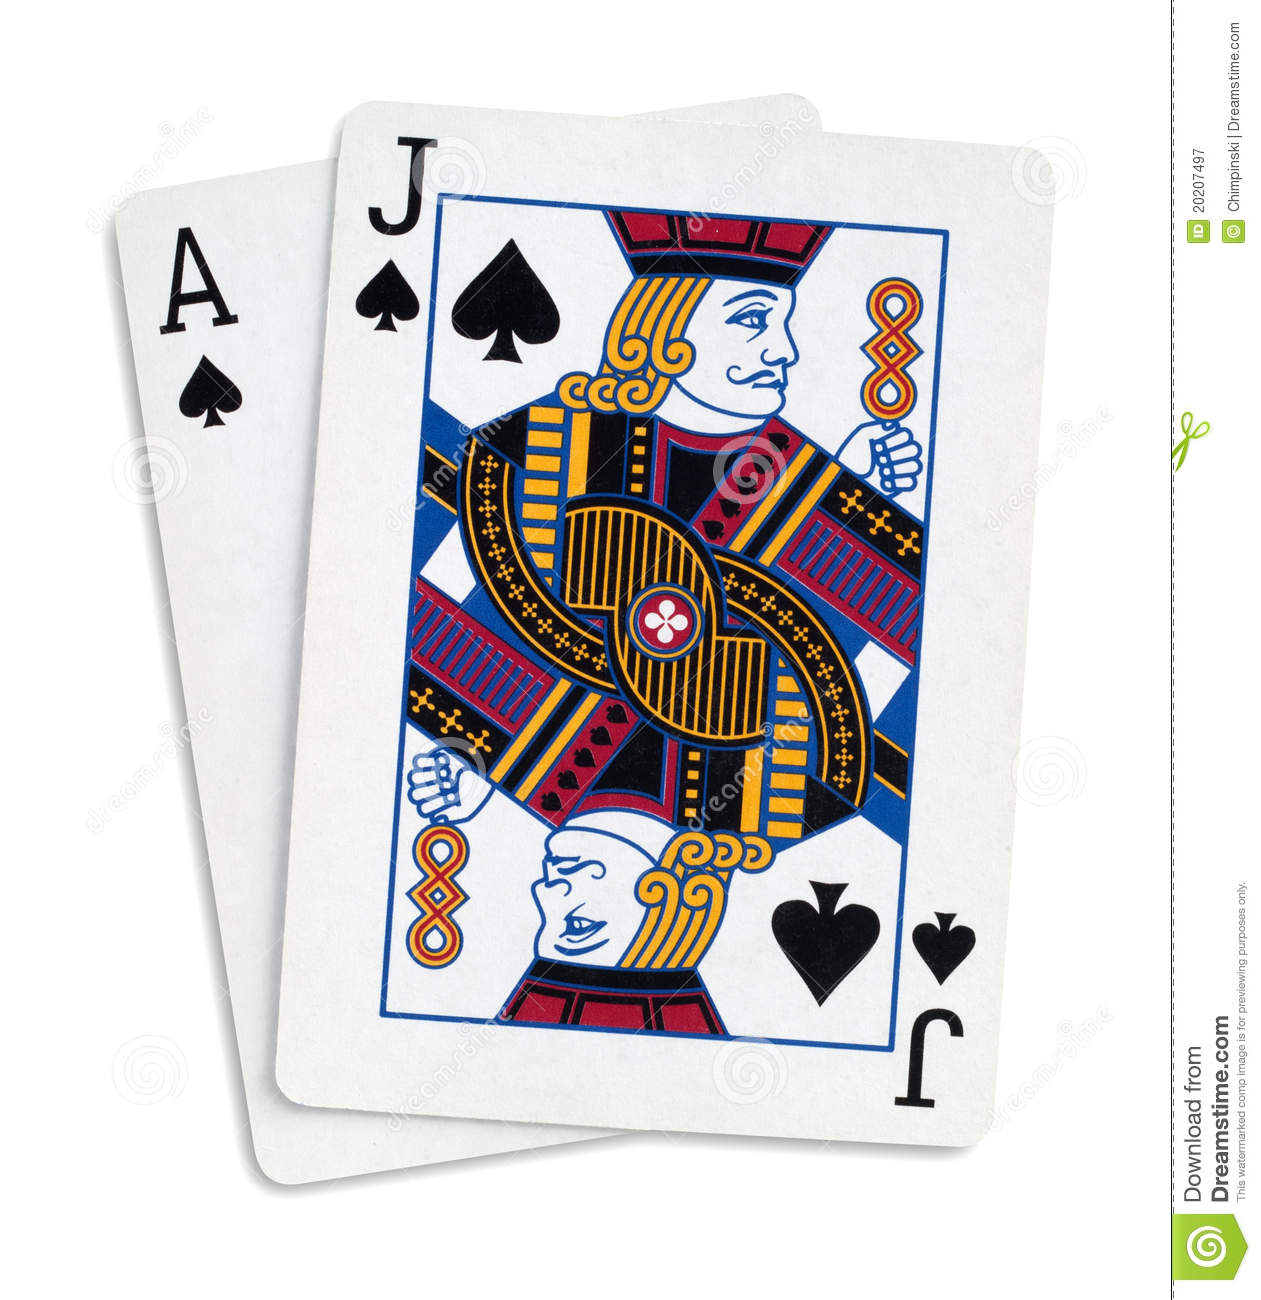 qual 茅 o jogo de cartas conhecido como black jack